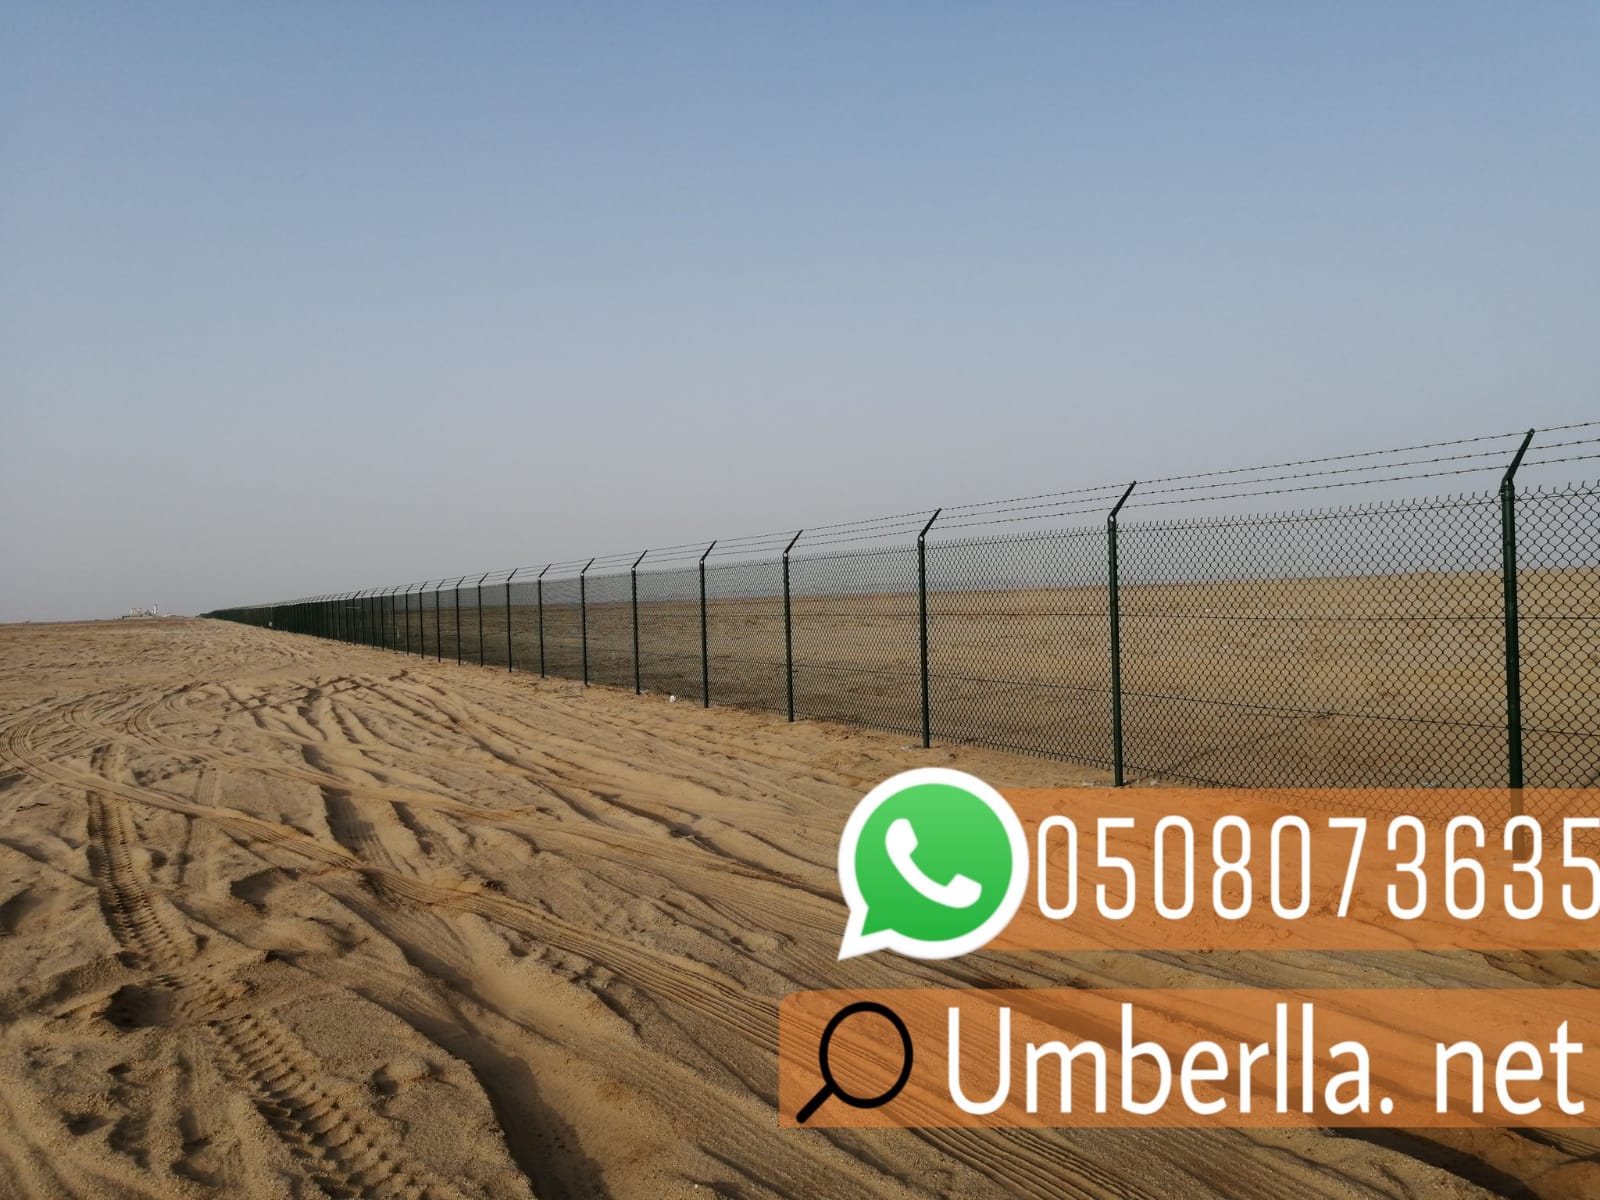 شبوك مزارع و تسوير اراضي في جدة , 0508073635 P_2081j7fgv1